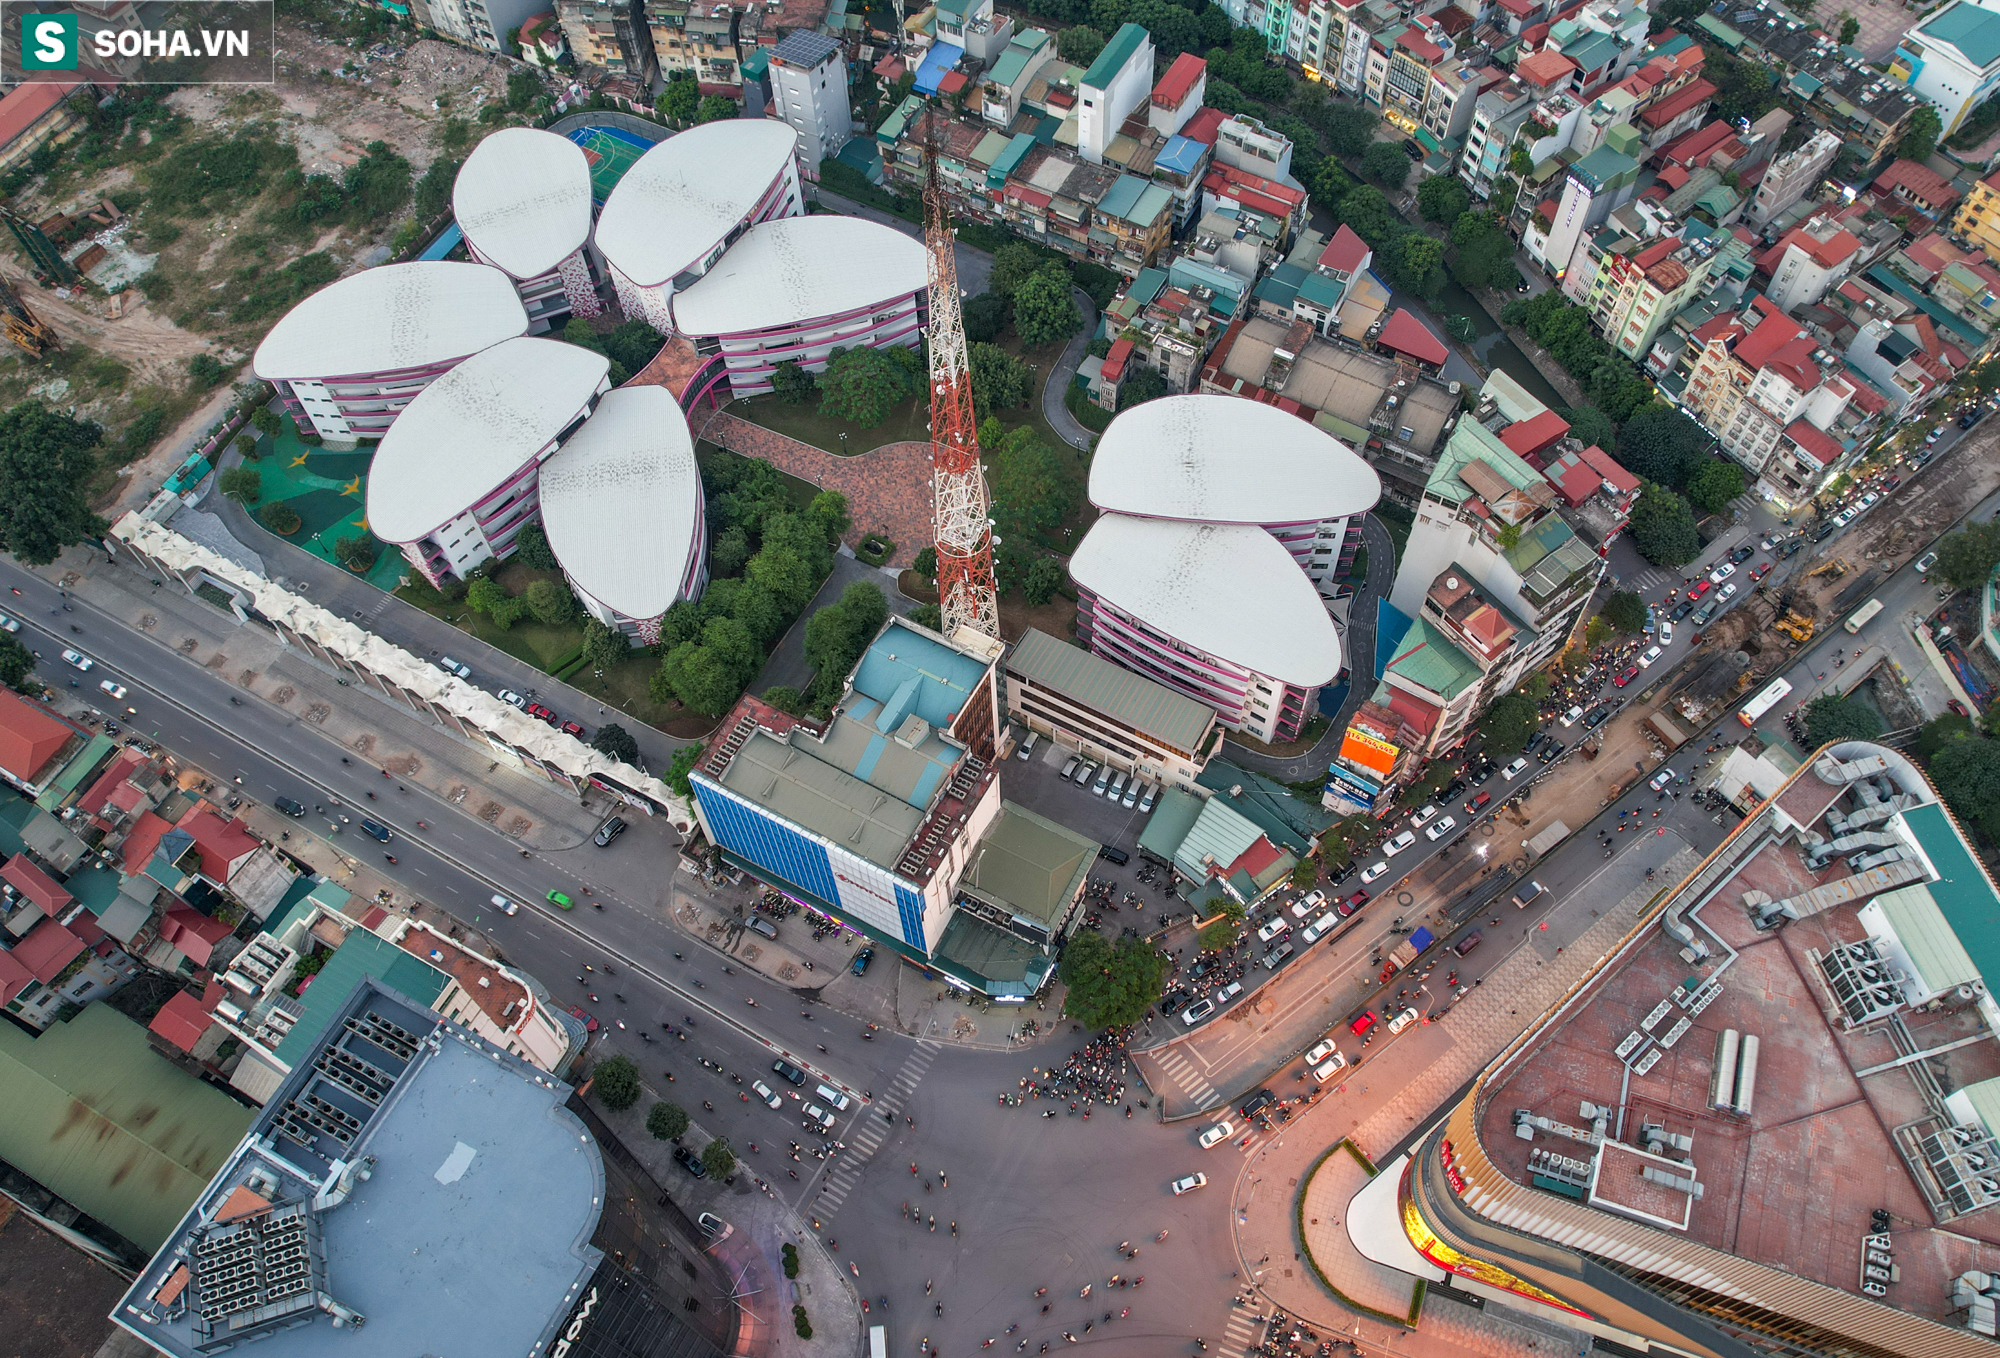 Soi tiến độ 5 dự án giao thông gần 2 tỷ đô ở Hà Nội - năm 2022 sẽ thoát cảnh đau khổ? - Ảnh 14.